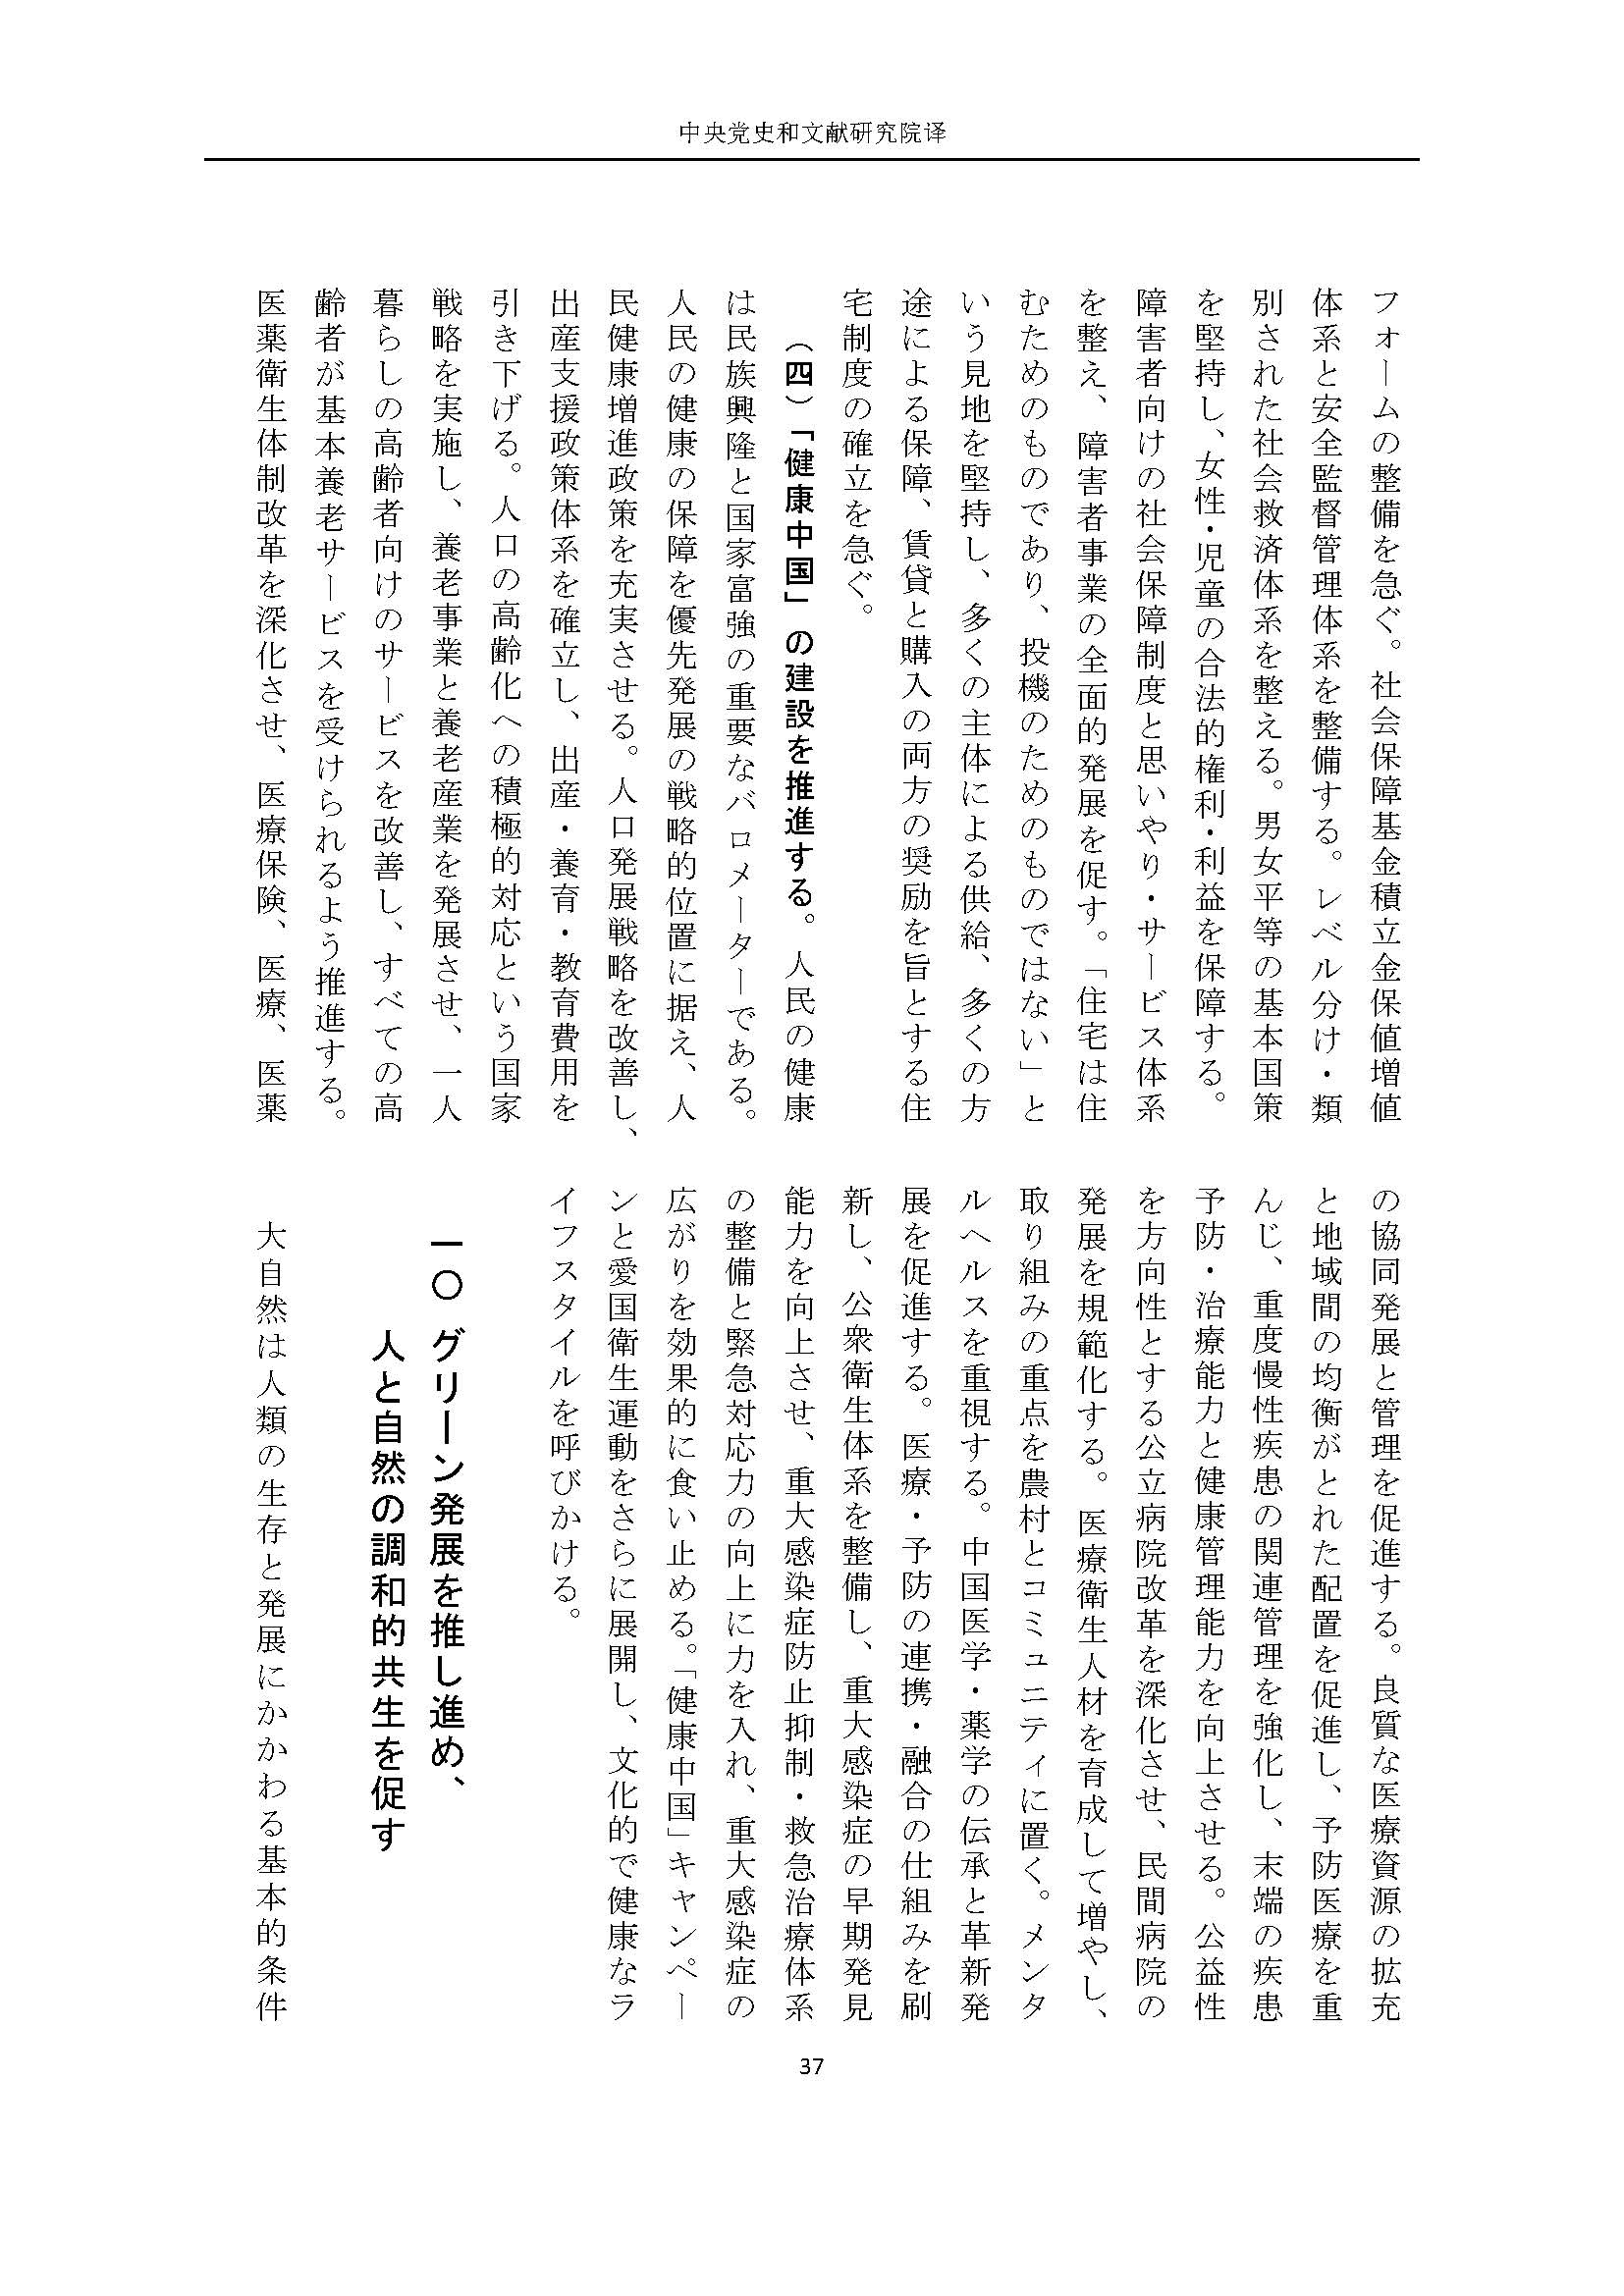 二十大报告（日文全文）_页面_38